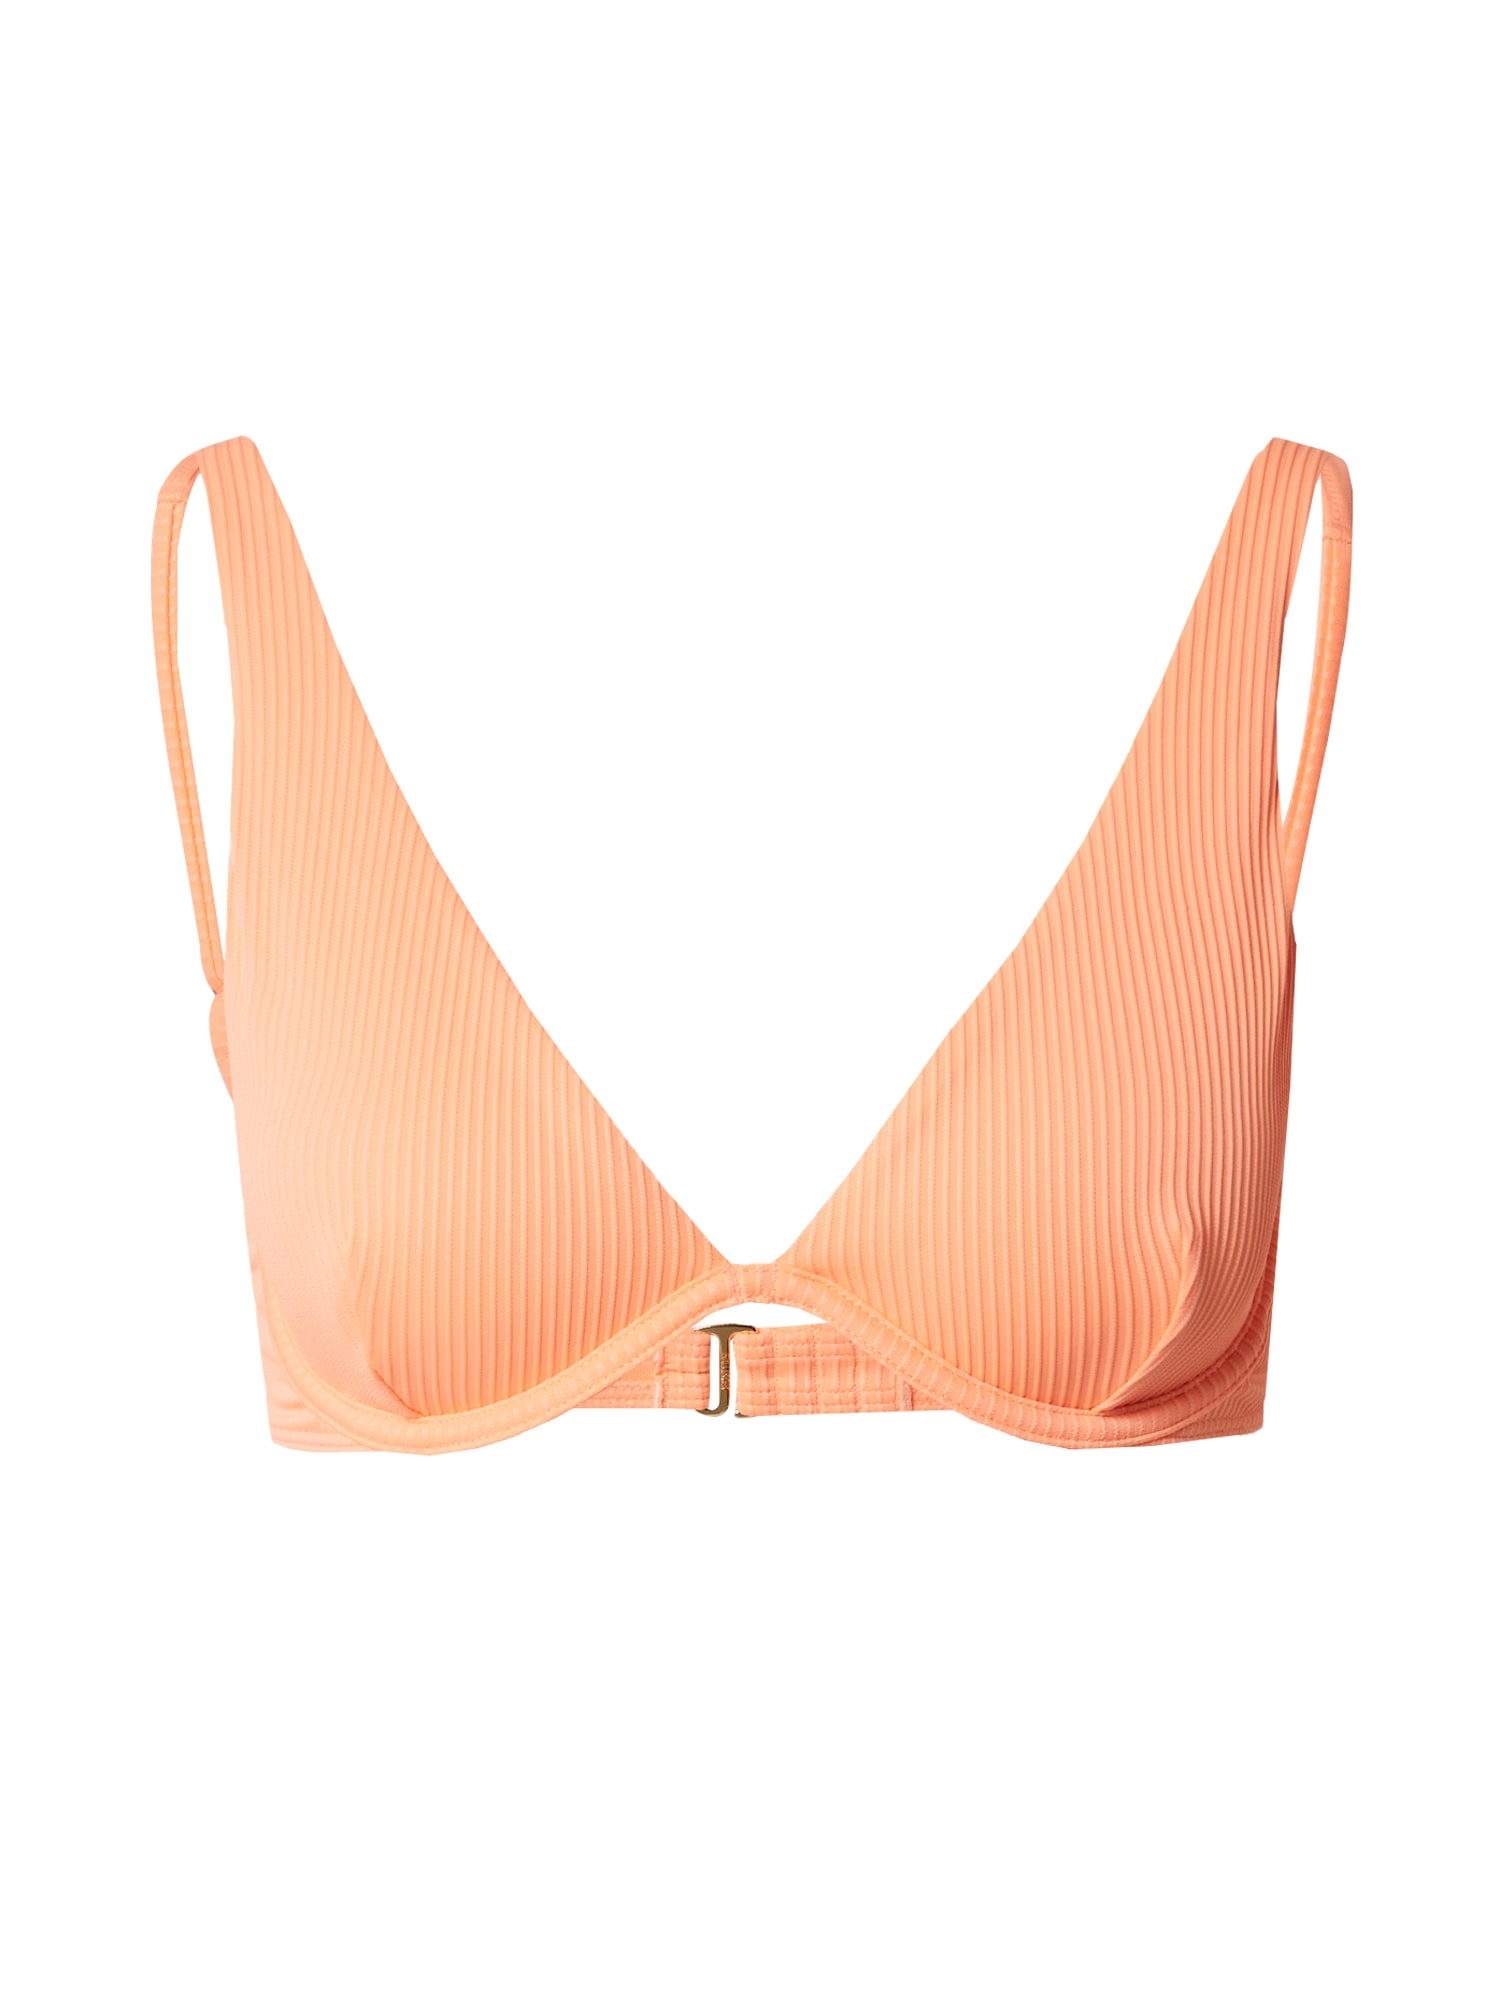 HOLLISTER Bikinio viršutinė dalis abrikosų spalva